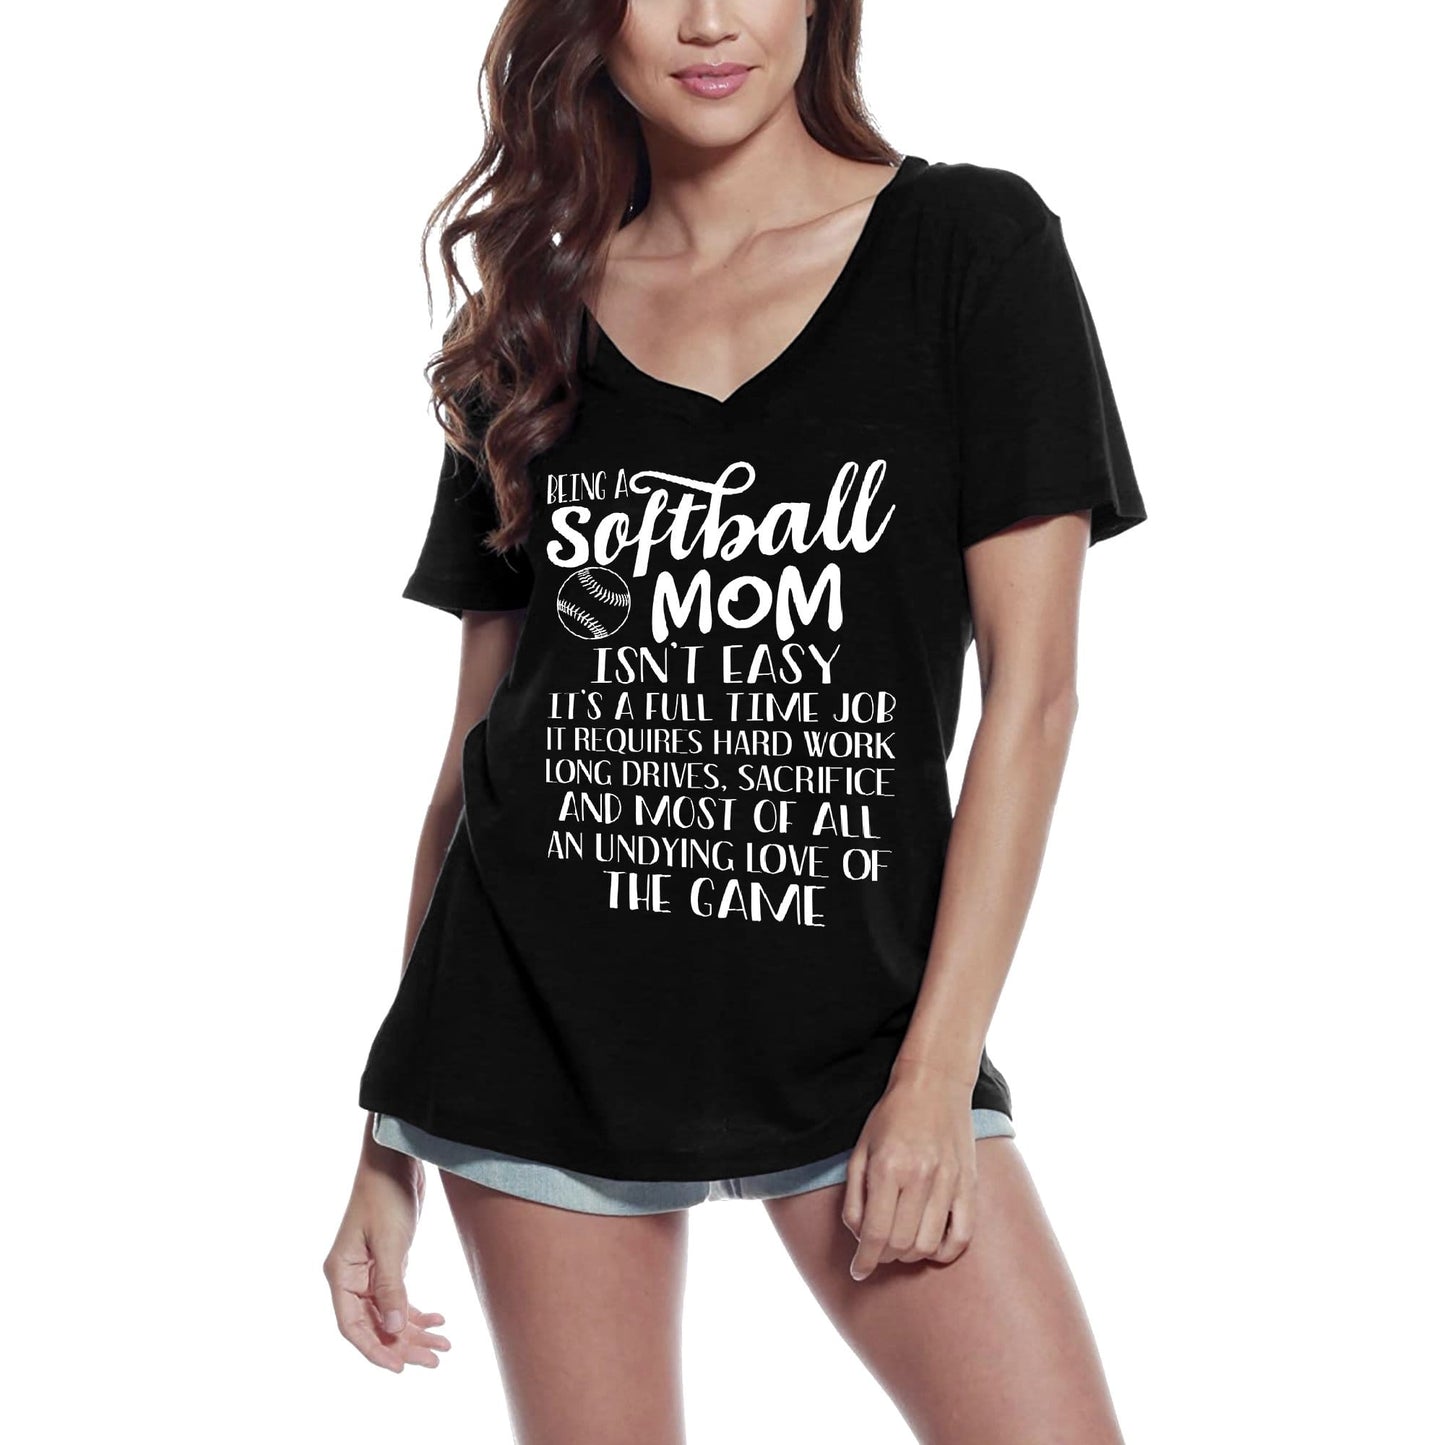 ULTRABASIC Women's V-Neck T-Shirt Being Softball Mom Isn't Easy - Funny Sport Mother Tee Shirt